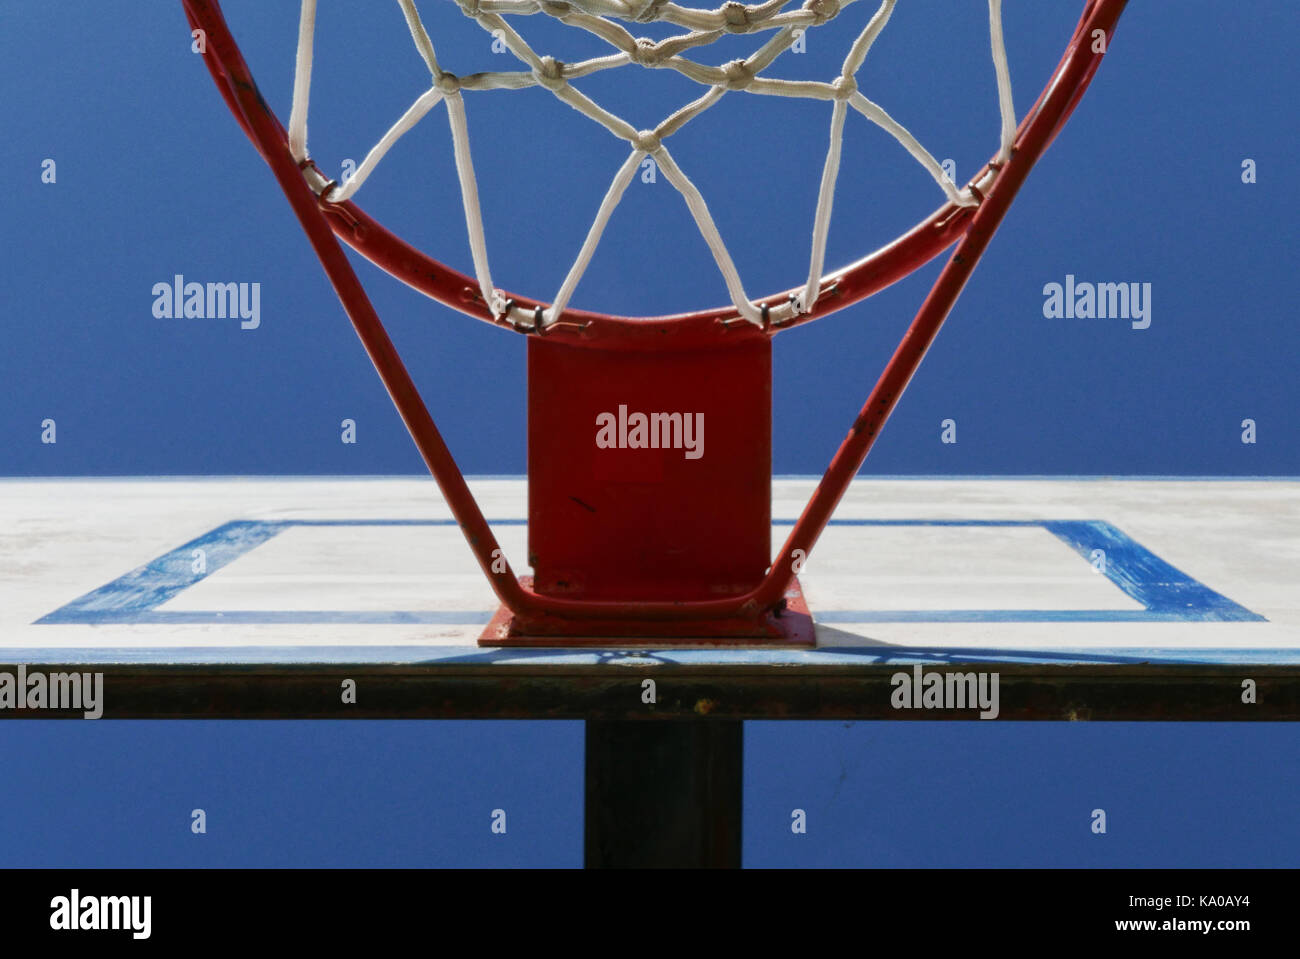 Basketball hoop, against blue sky, Italy Stock Photo